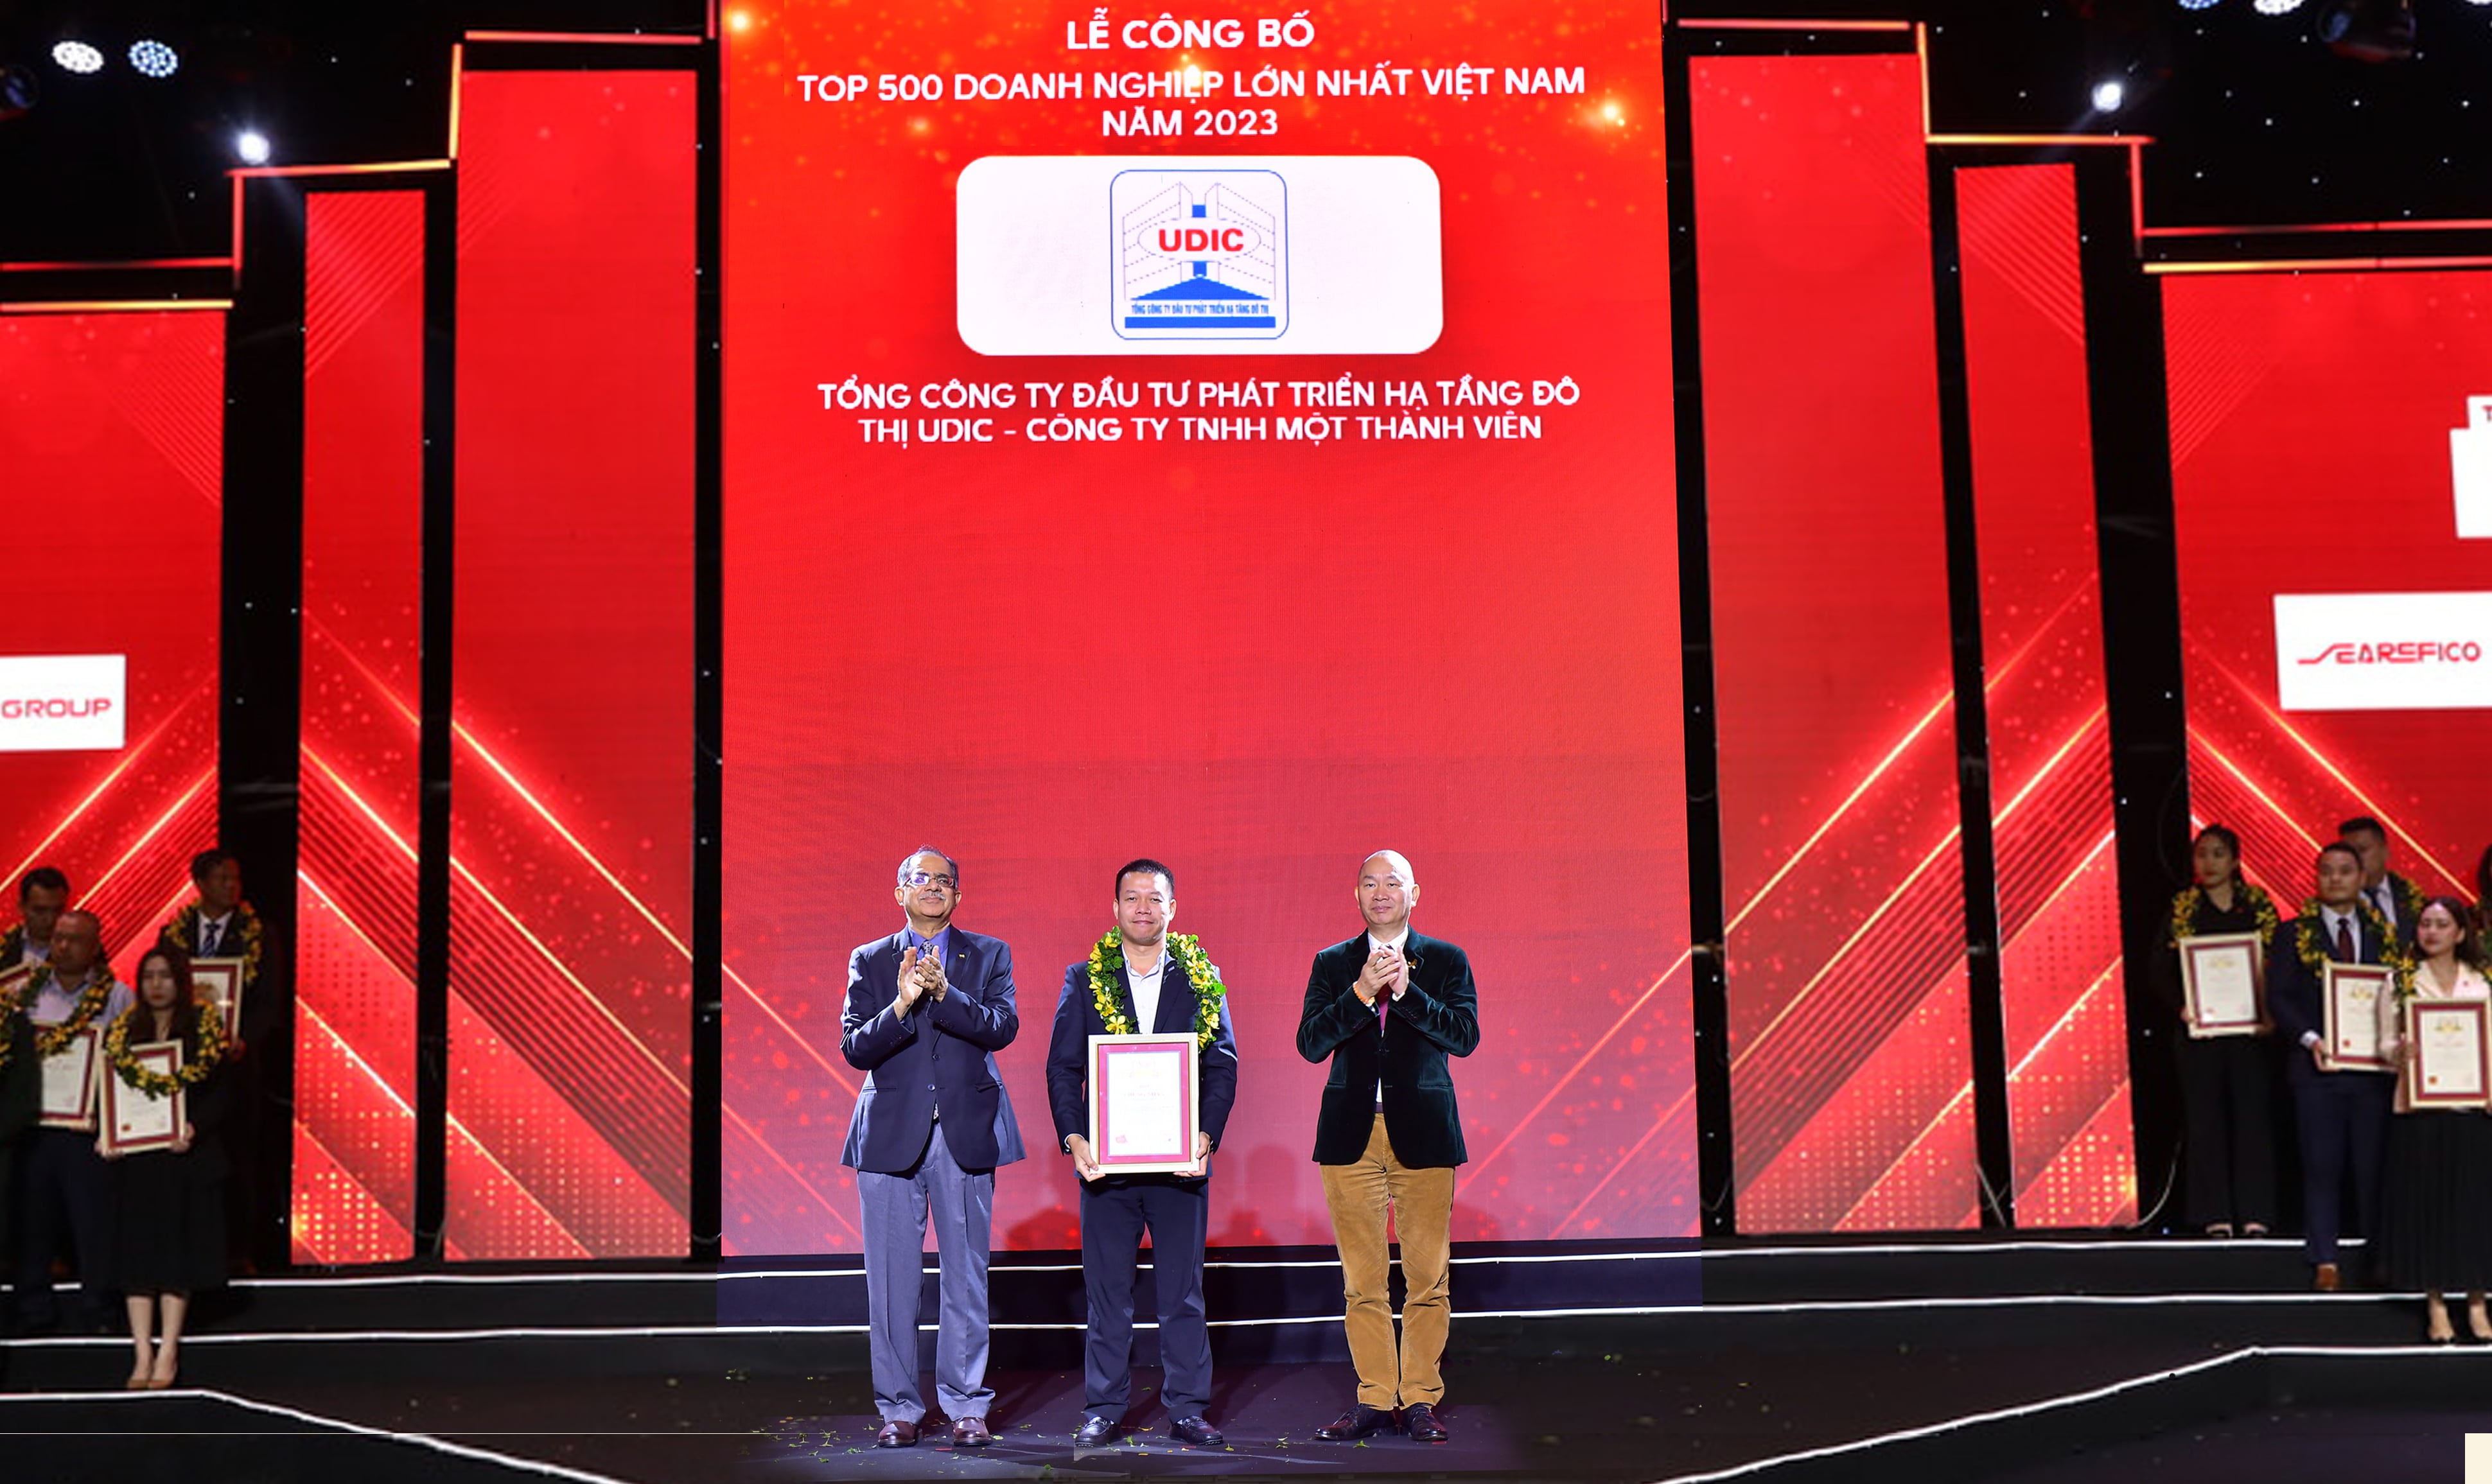 UDIC 7 năm liên tiếp có tên trong Bảng xếp hạng Top 500 Doanh nghiệp lớn nhất Việt Nam 